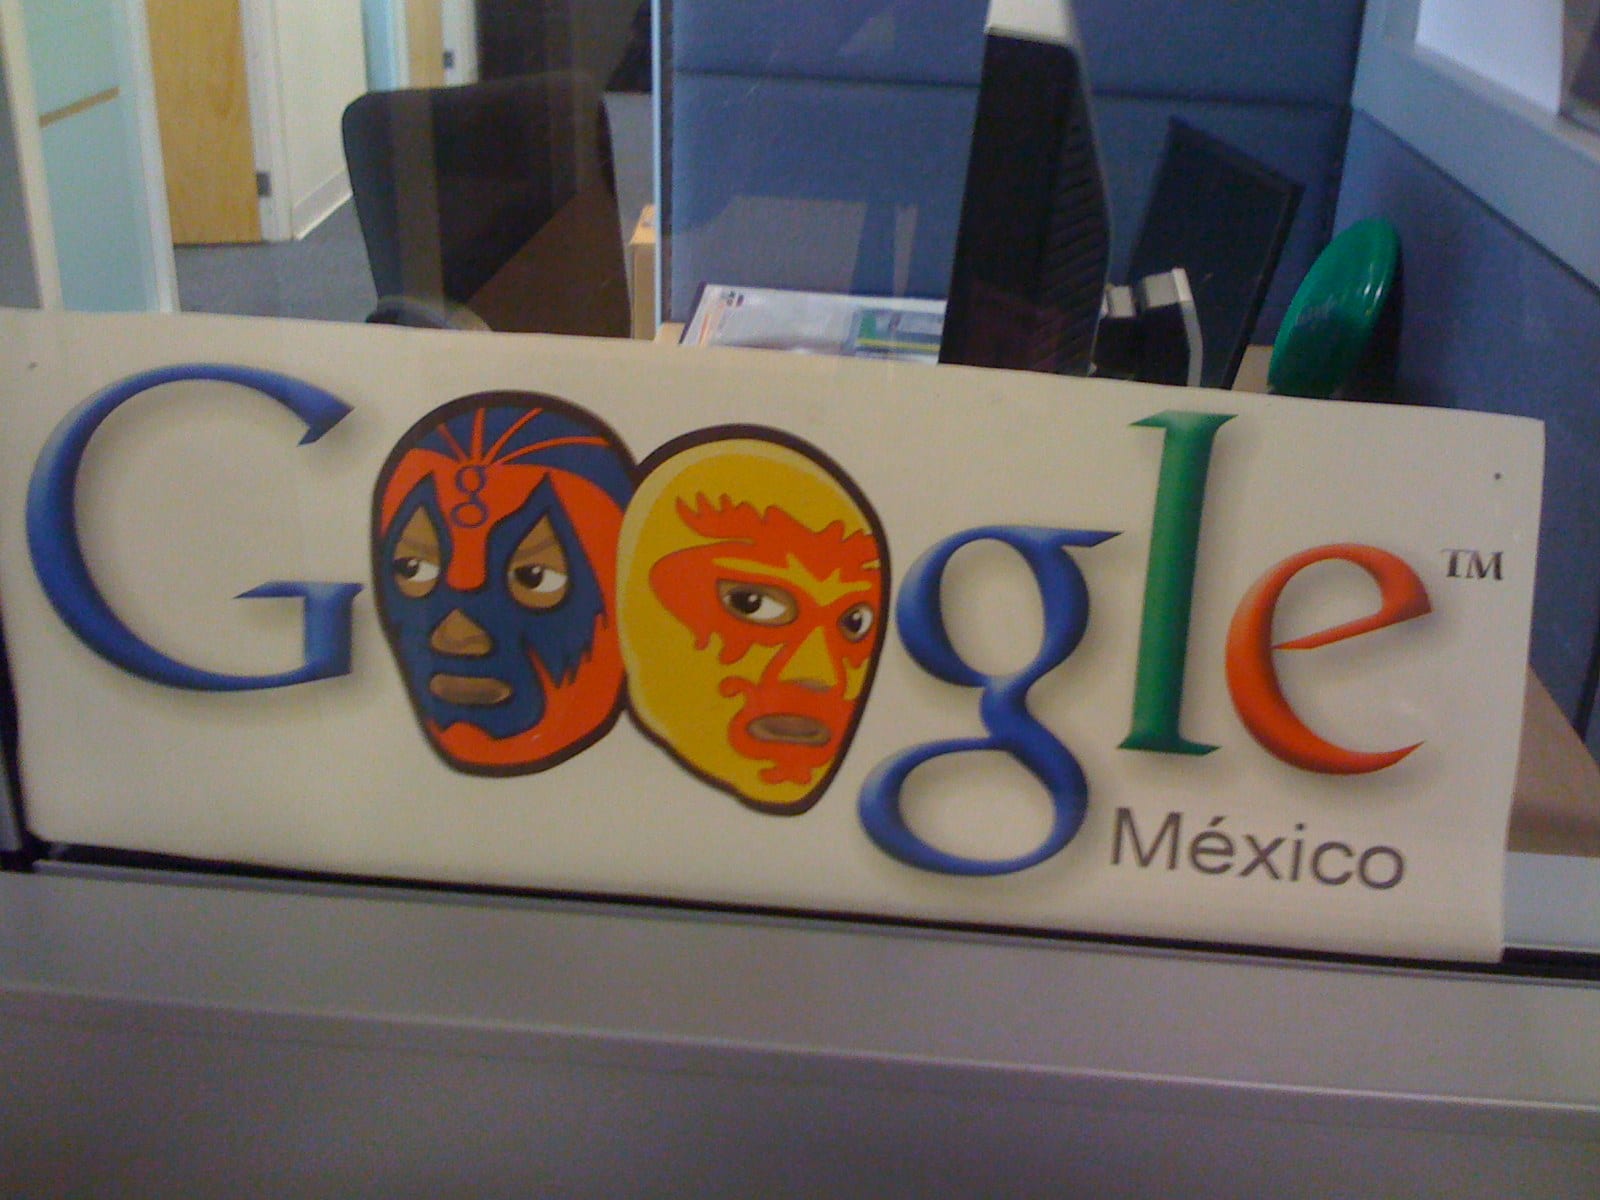 como- trabajar-en-google-mexico-